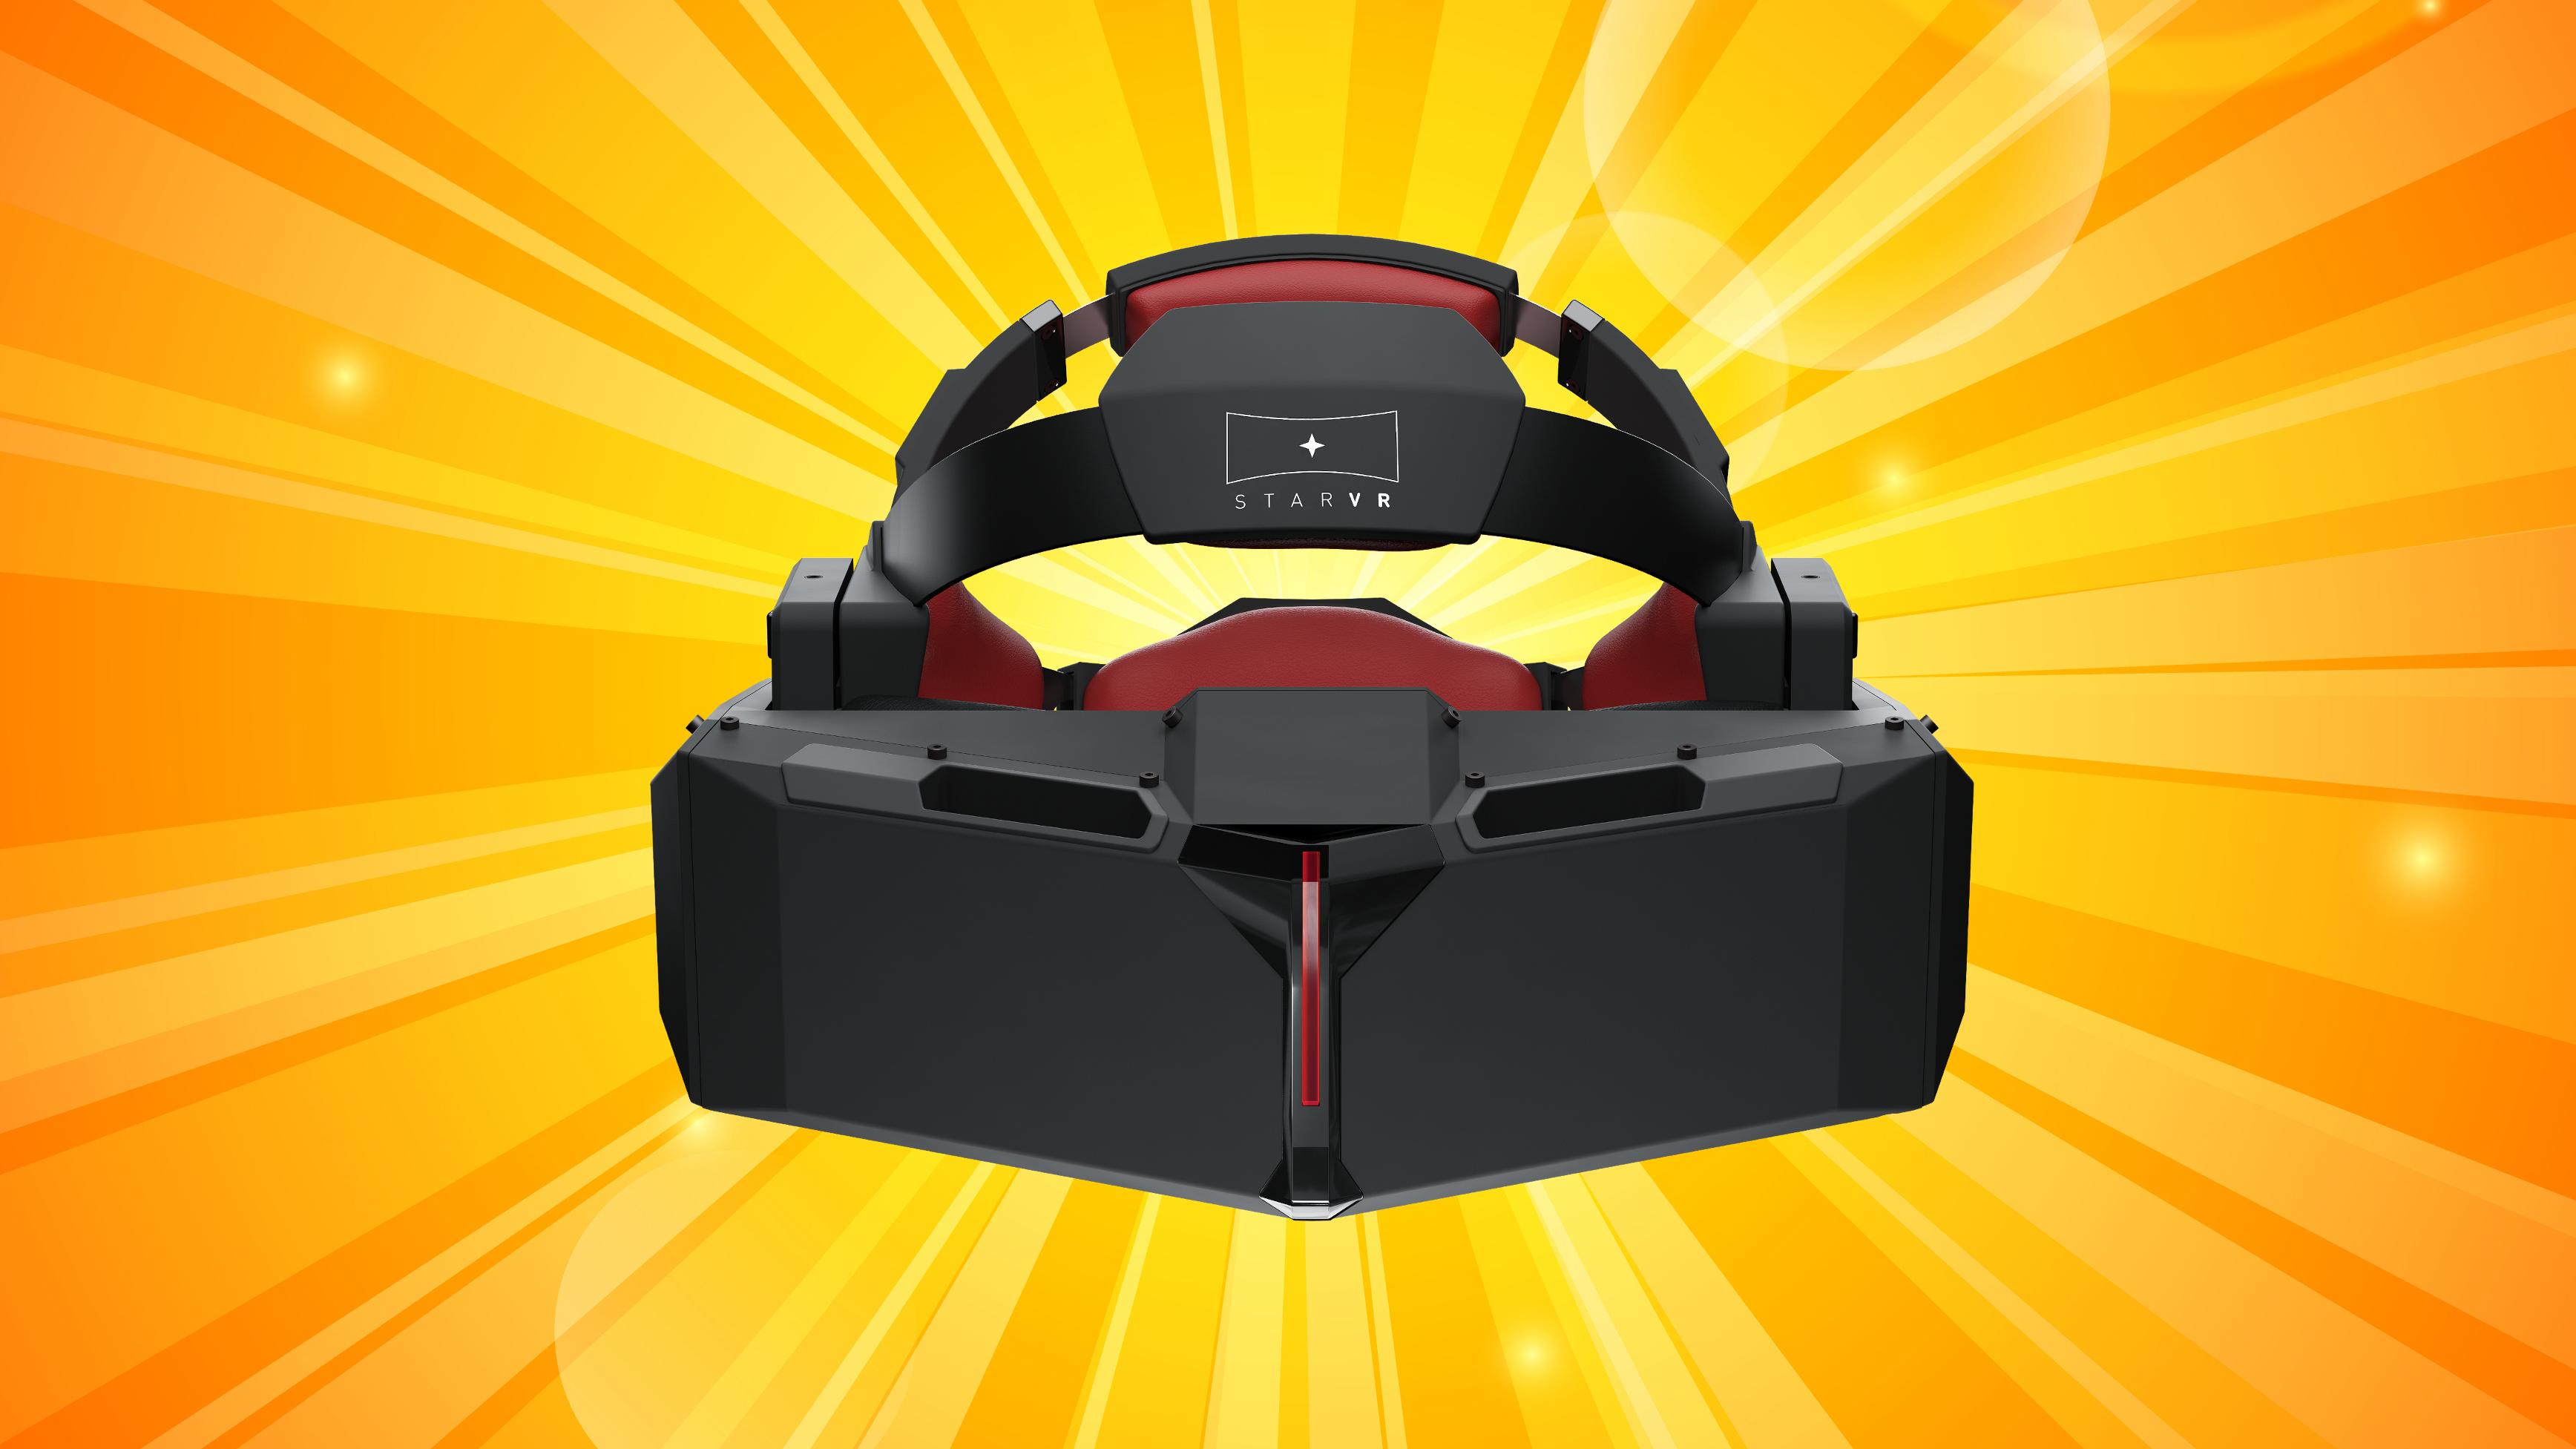 Disse VR-brillene blir mye bedre enn Oculus Rift og HTC Vive